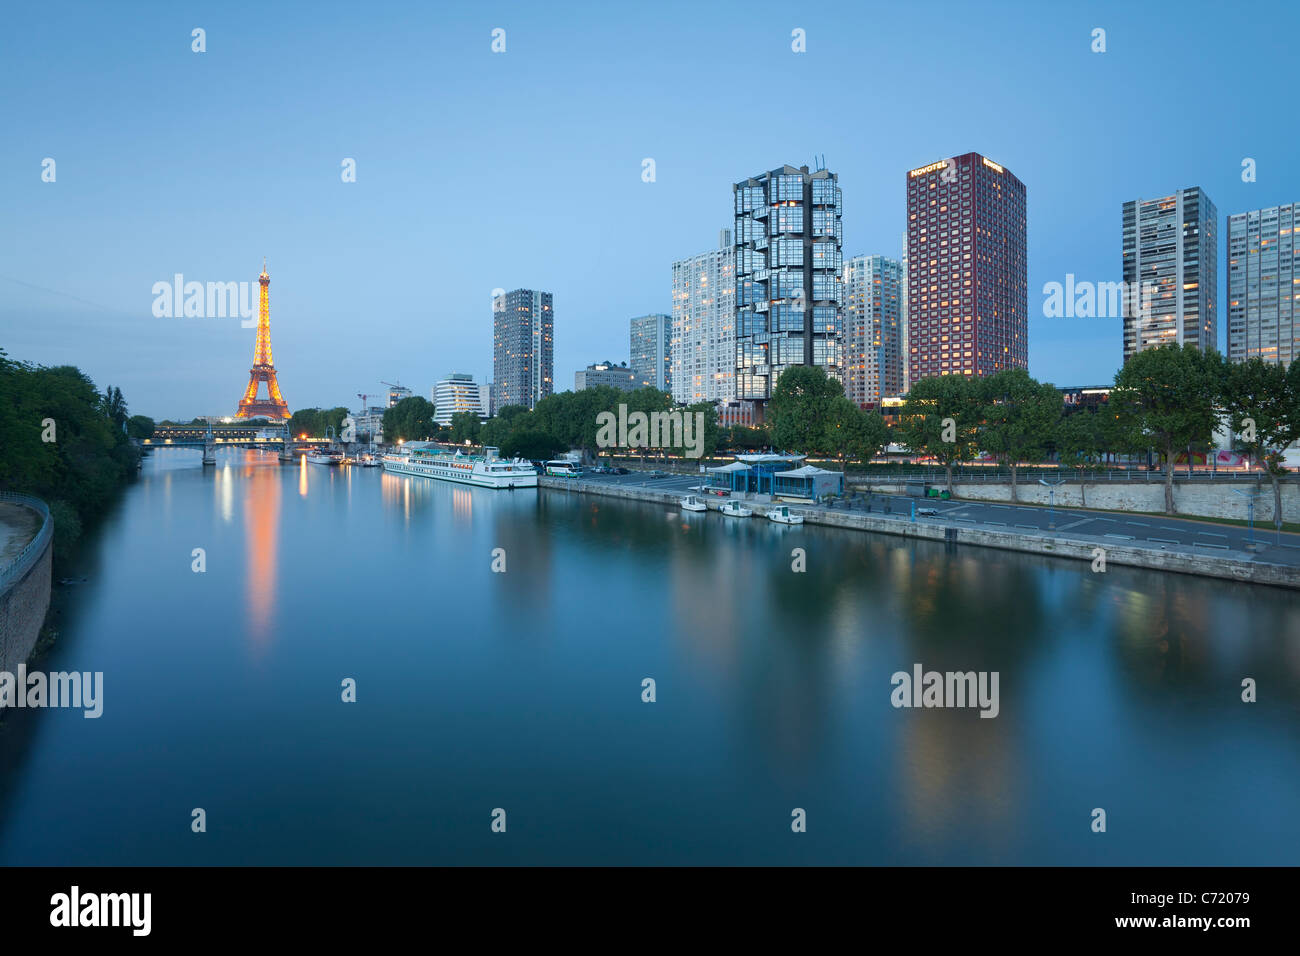 France, Paris, Vue de nuit sur la Seine aux immeubles de grande hauteur sur la rive gauche et de la Tour Eiffel Banque D'Images